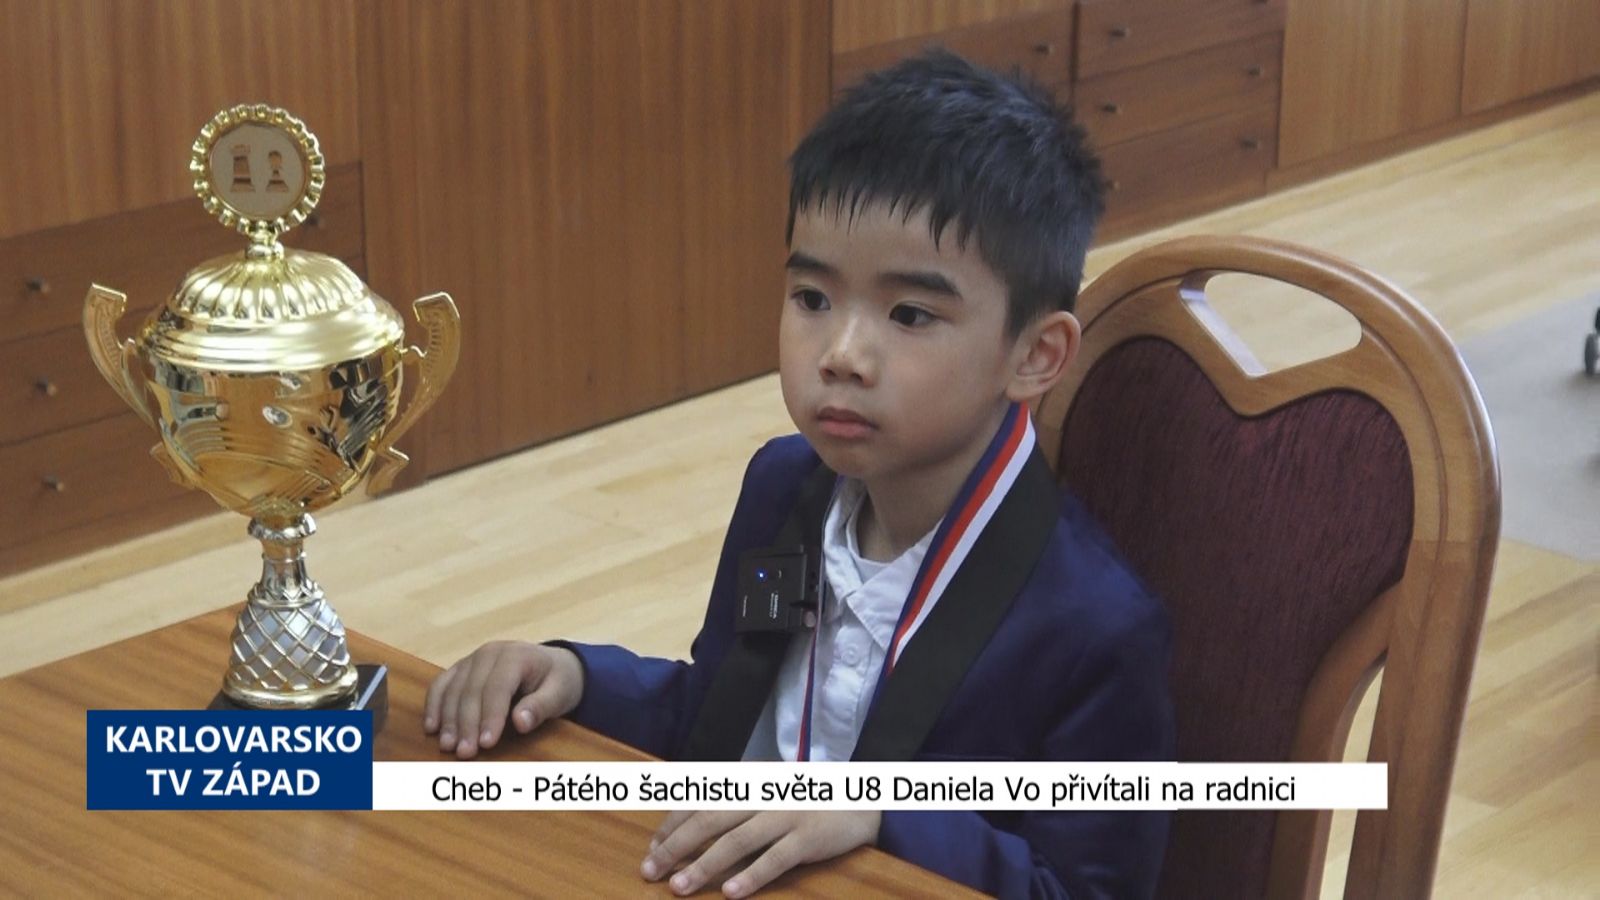 Cheb: Pátého šachistu světa U8 Daniela Vo přivítali na radnici (TV Západ)